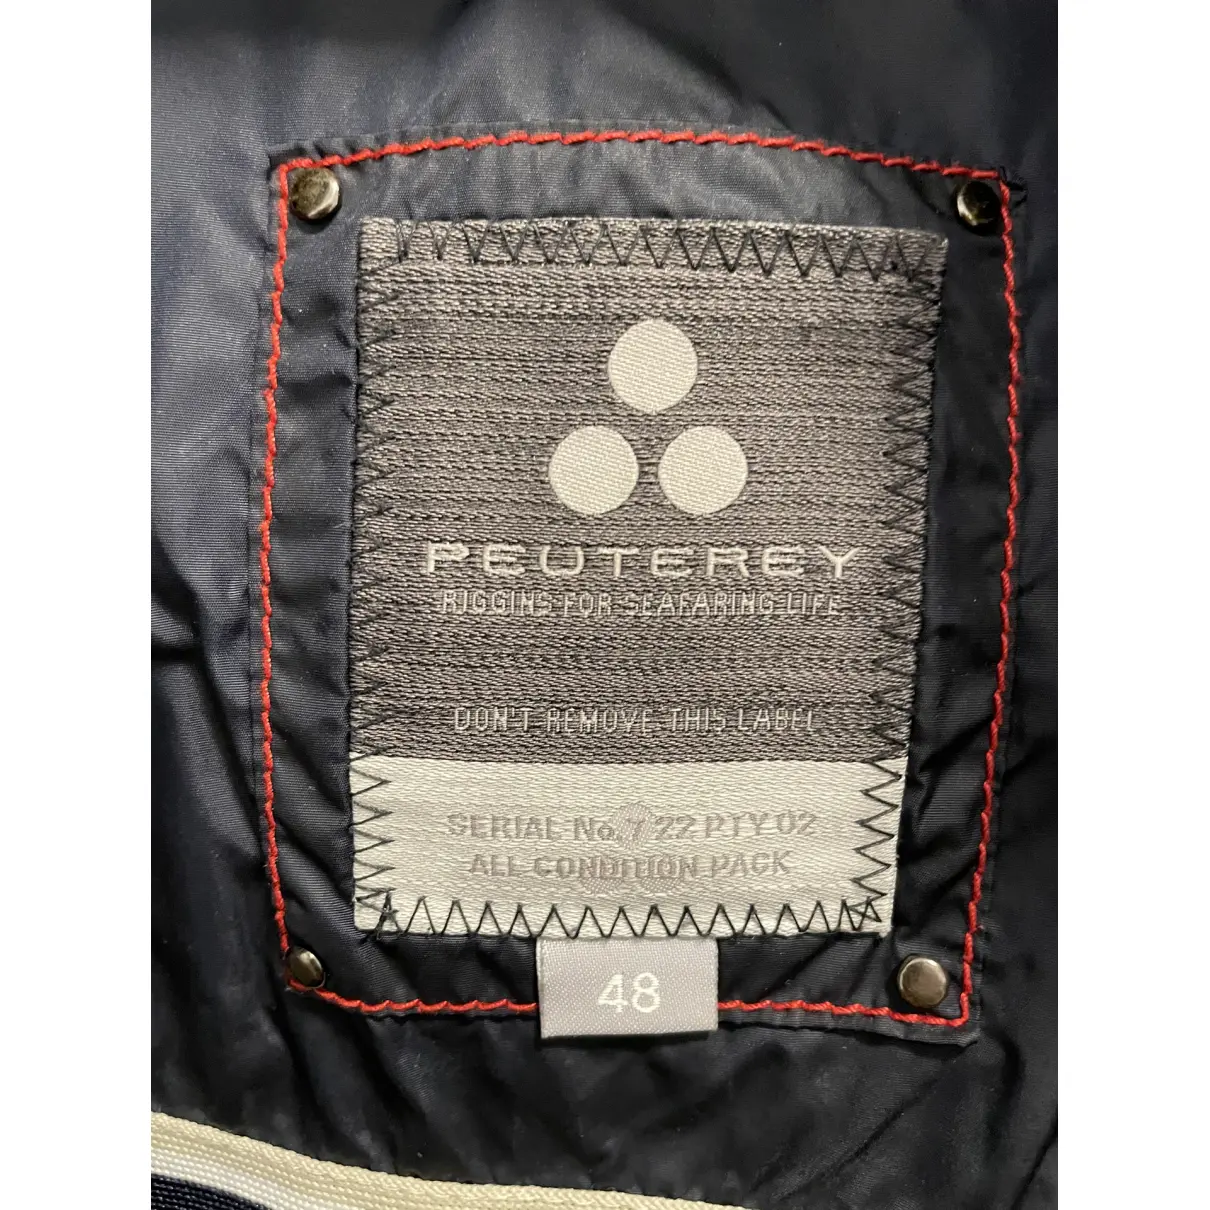 Buy Peuterey Puffer online